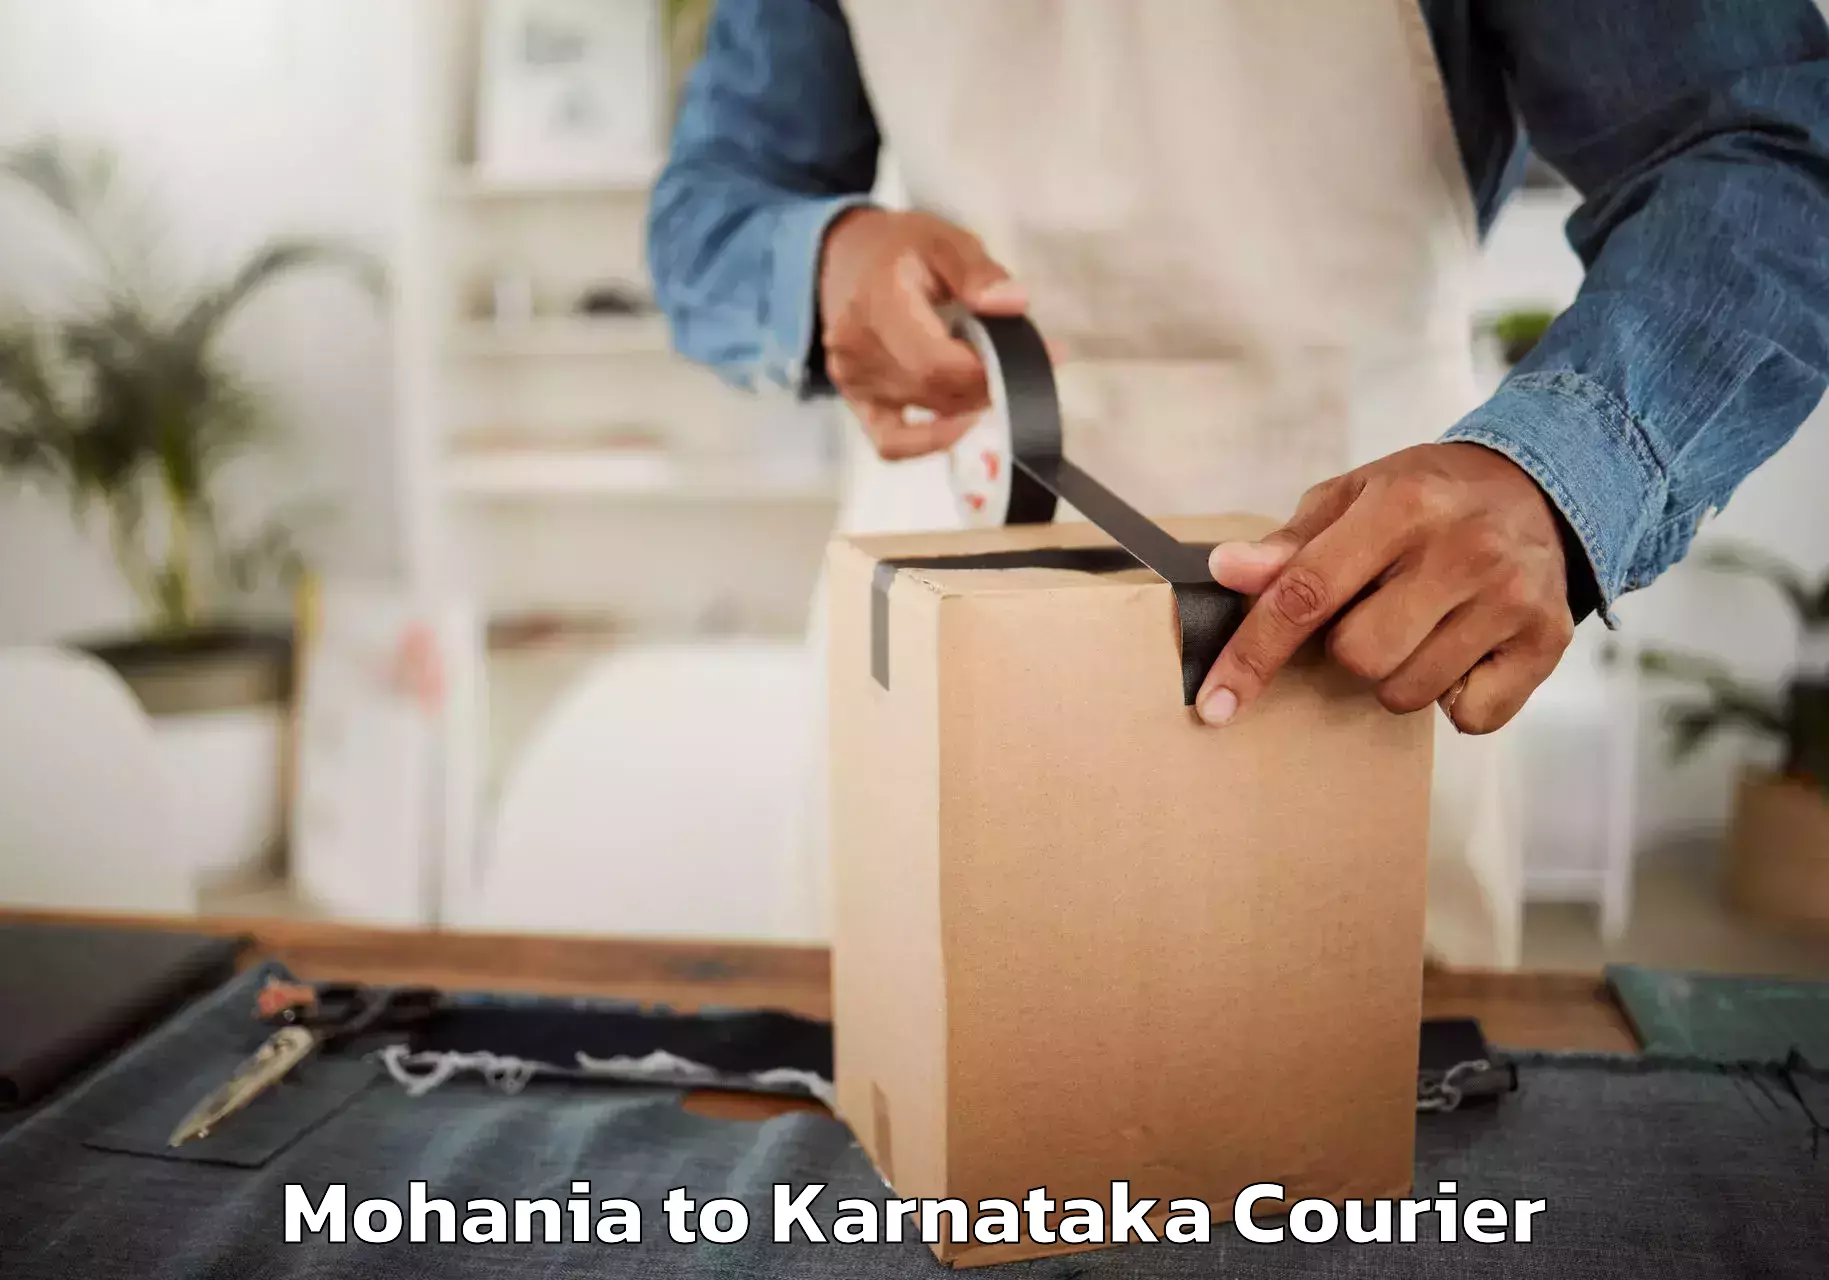 Reliable moving solutions Mohania to Karnataka